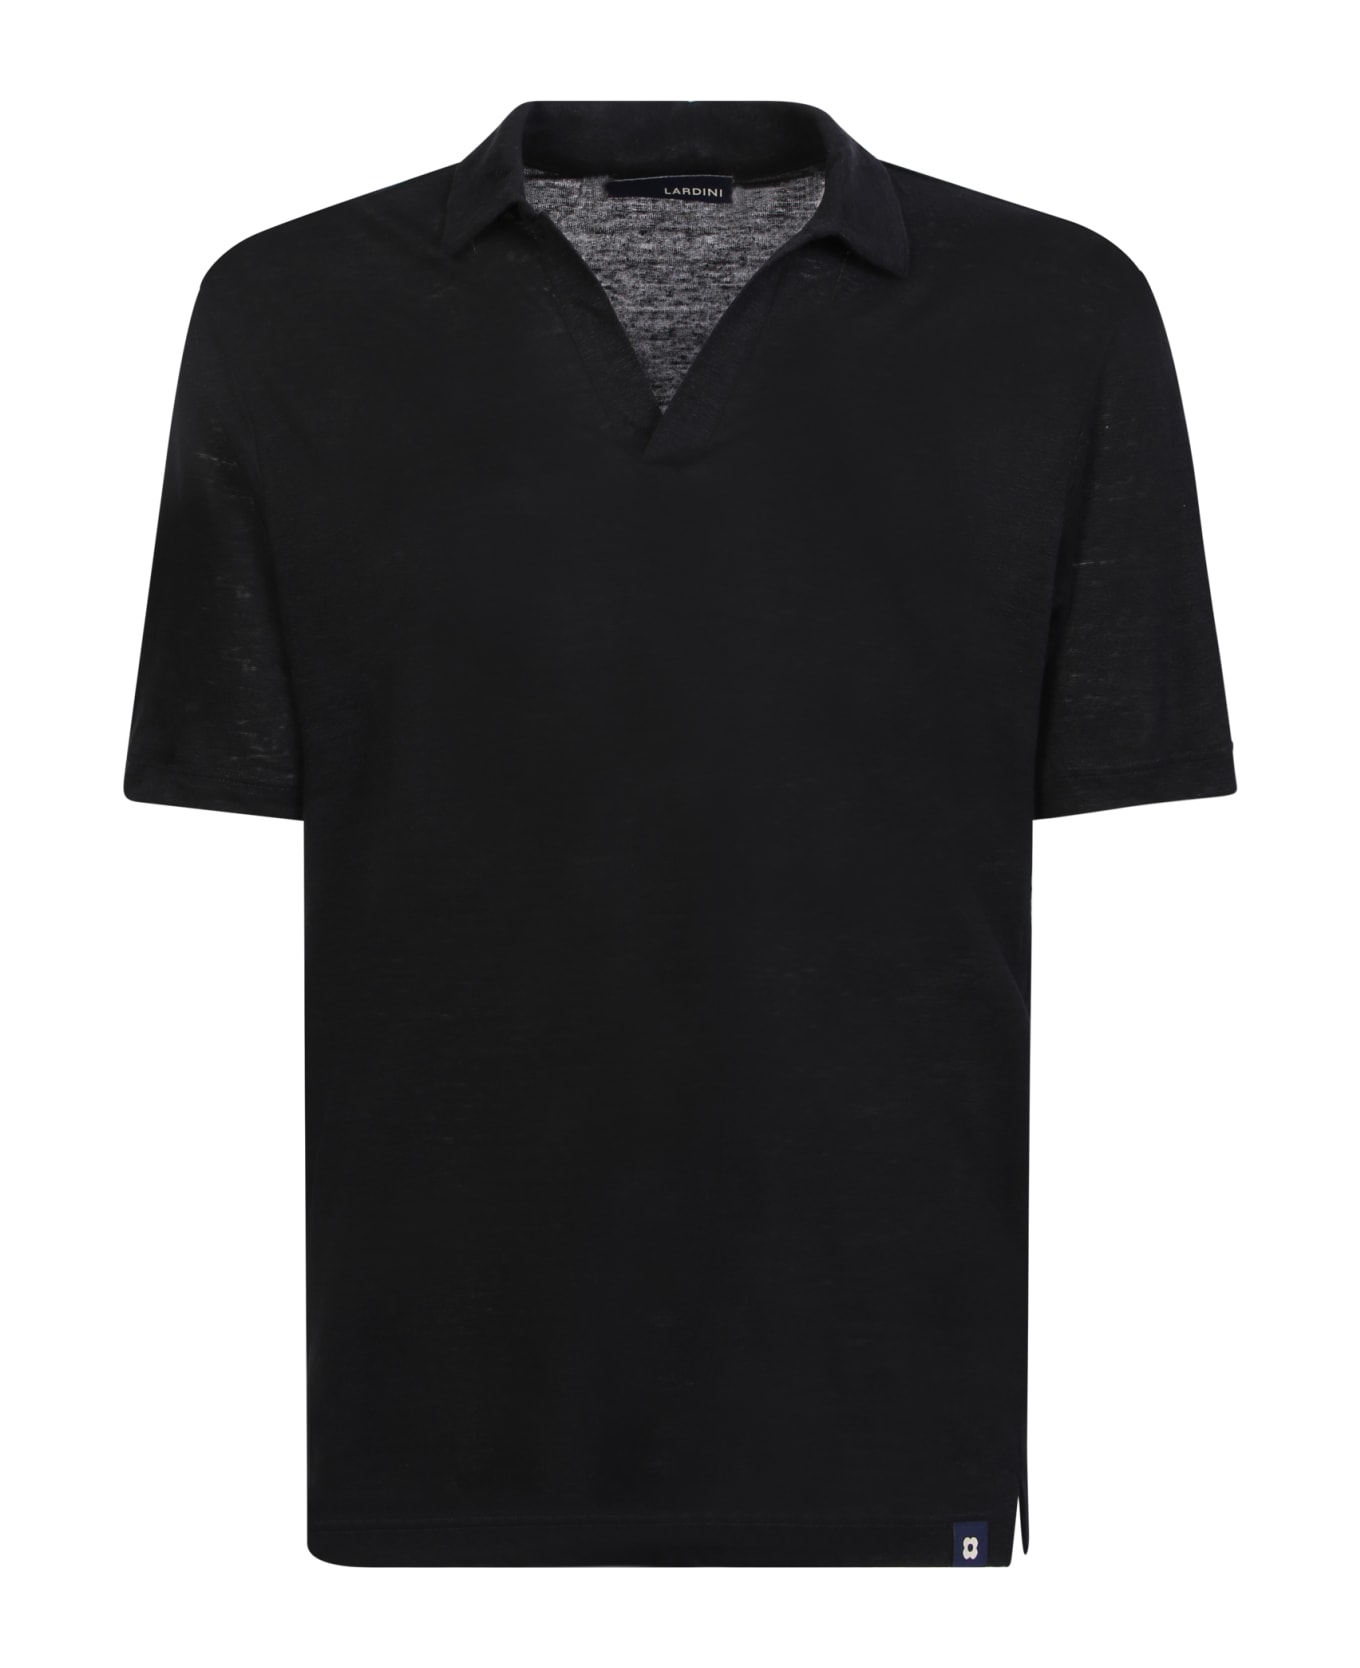 Lardini Linen Polo Black Shirt - Black